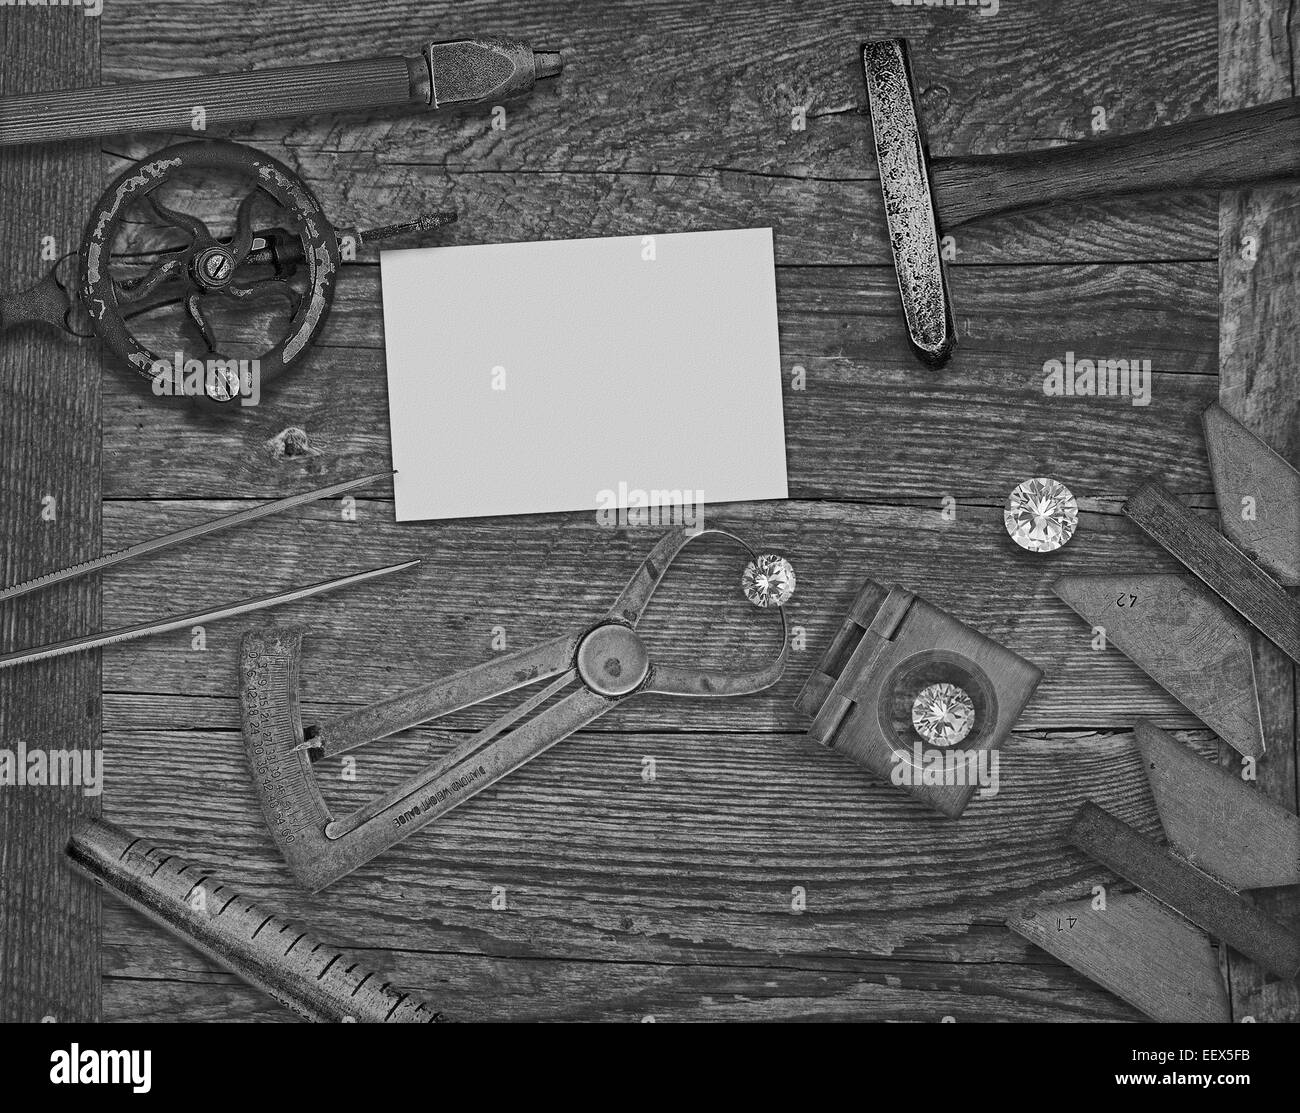 Image en noir et blanc d'un bijoutier et diamants outils vintage sur banc en bois, de l'espace pour le texte sur un blanc businesscard Banque D'Images